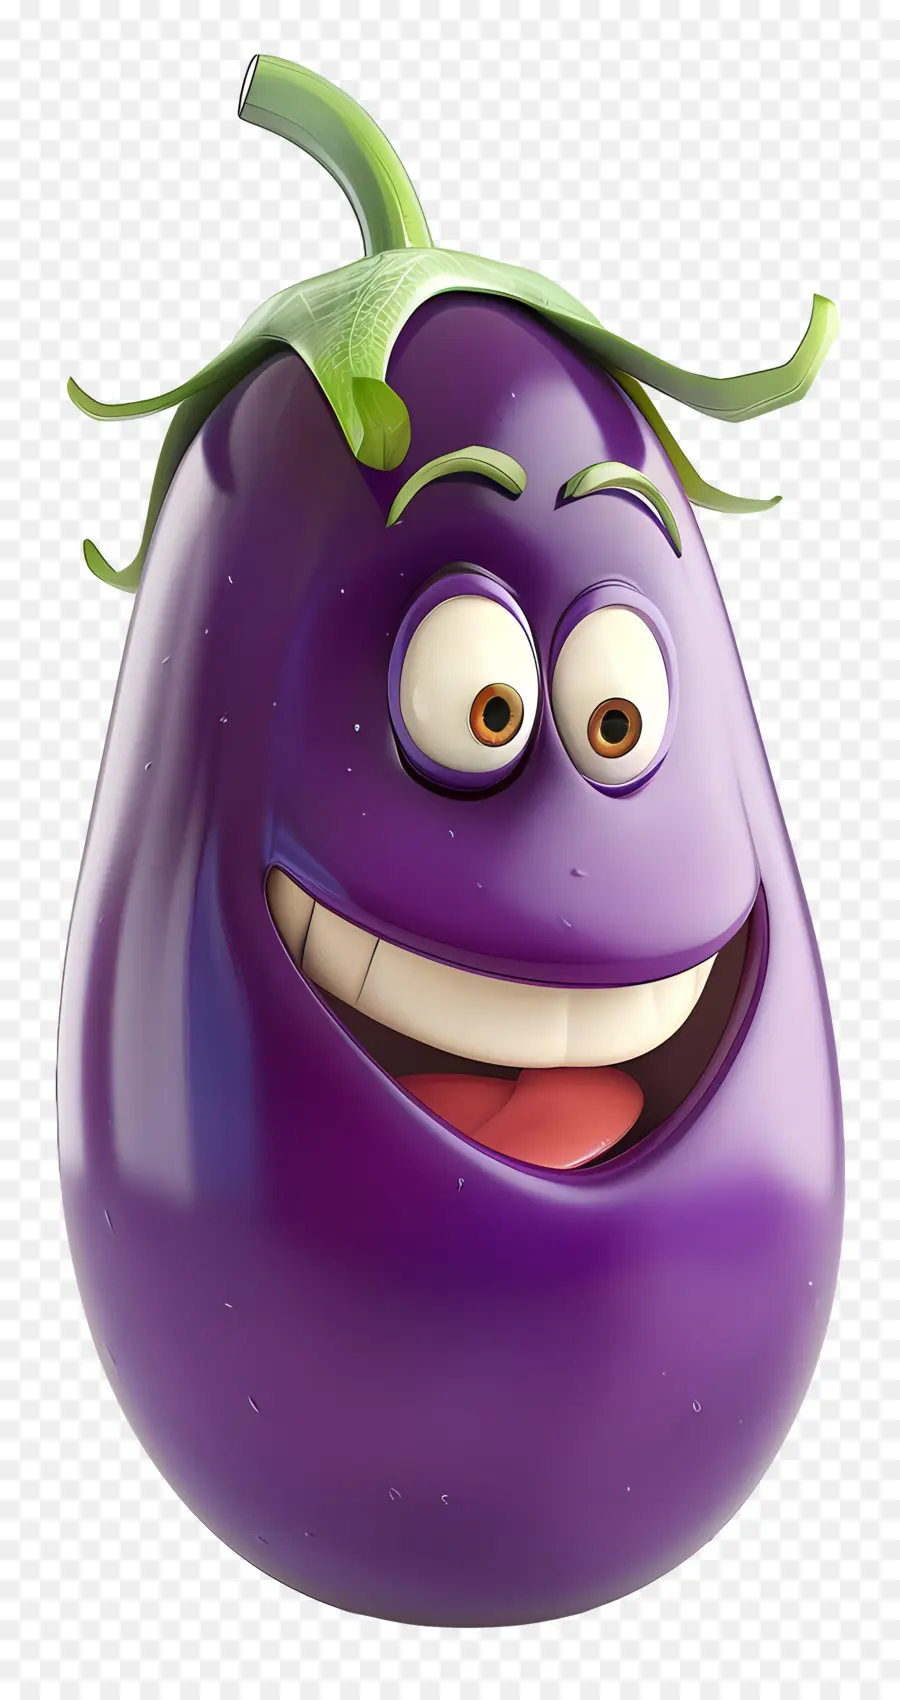 3d cartoon vegetable plum fruit purple smile